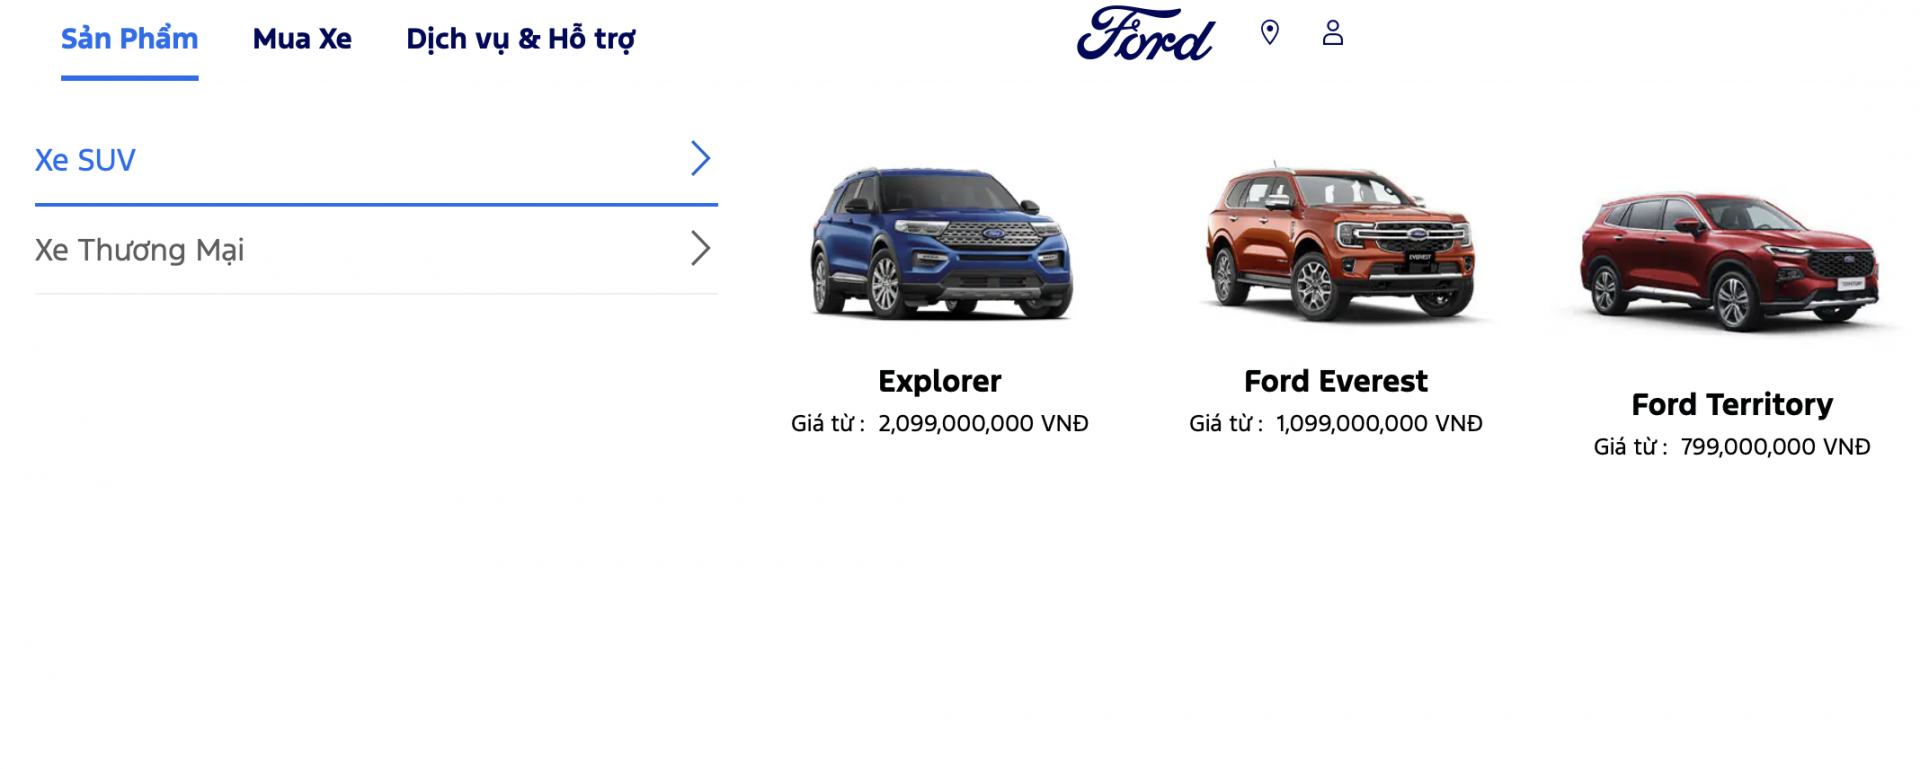 Ford Explorer tăng giá niêm yết 100 triệu đồng, giá lăn bánh tăng lên thành gần 2,4 tỷ đồng